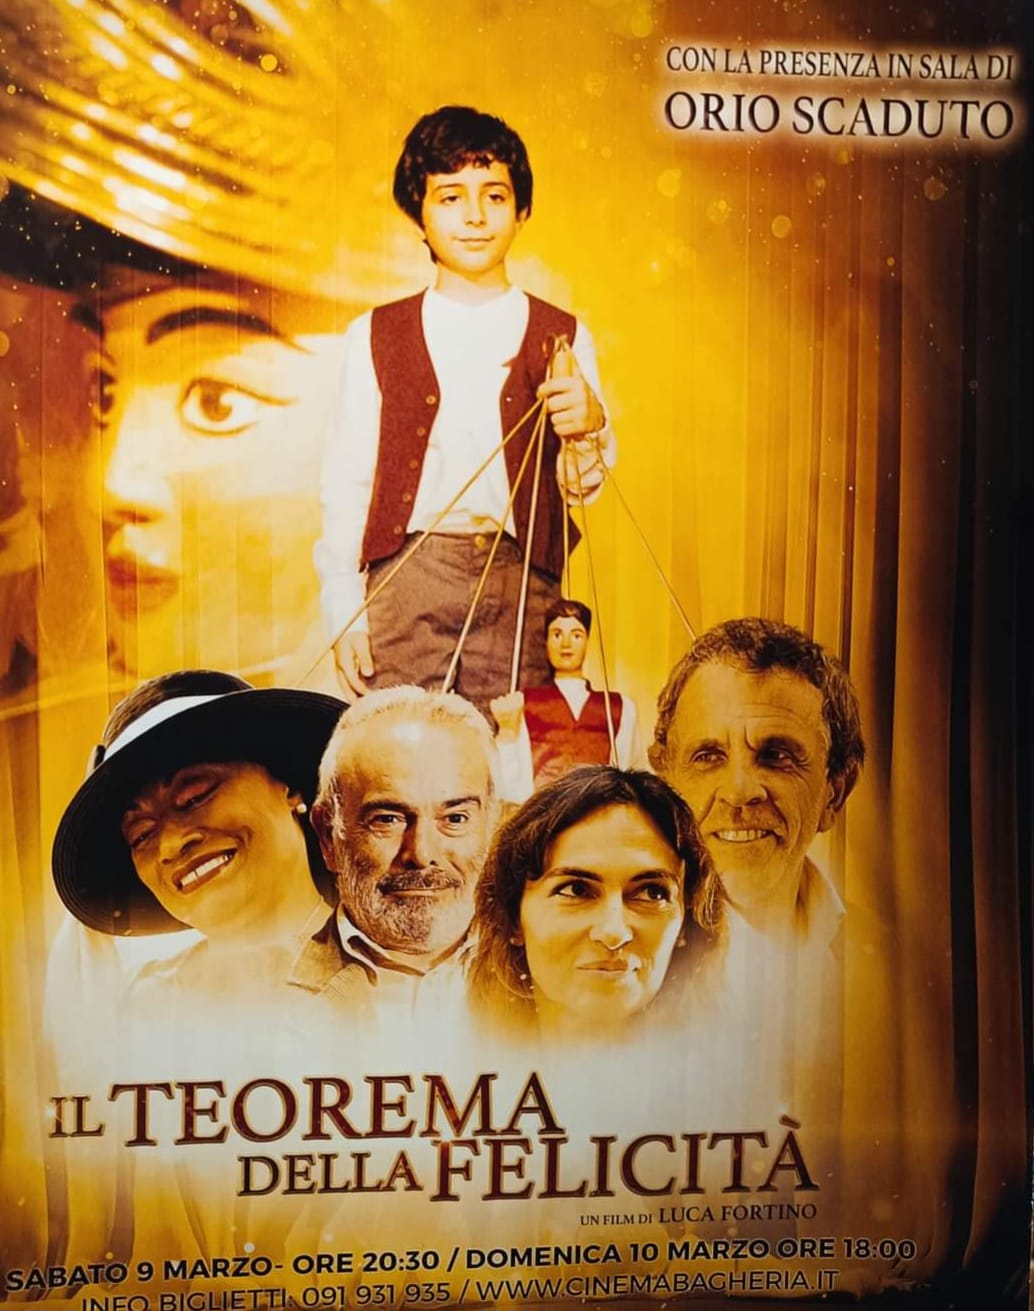 "Il Teorema della felicità" con l'attore bagherese Orio Scaduto a cinema a Bagheria. Le congratulazioni dell'amministrazione